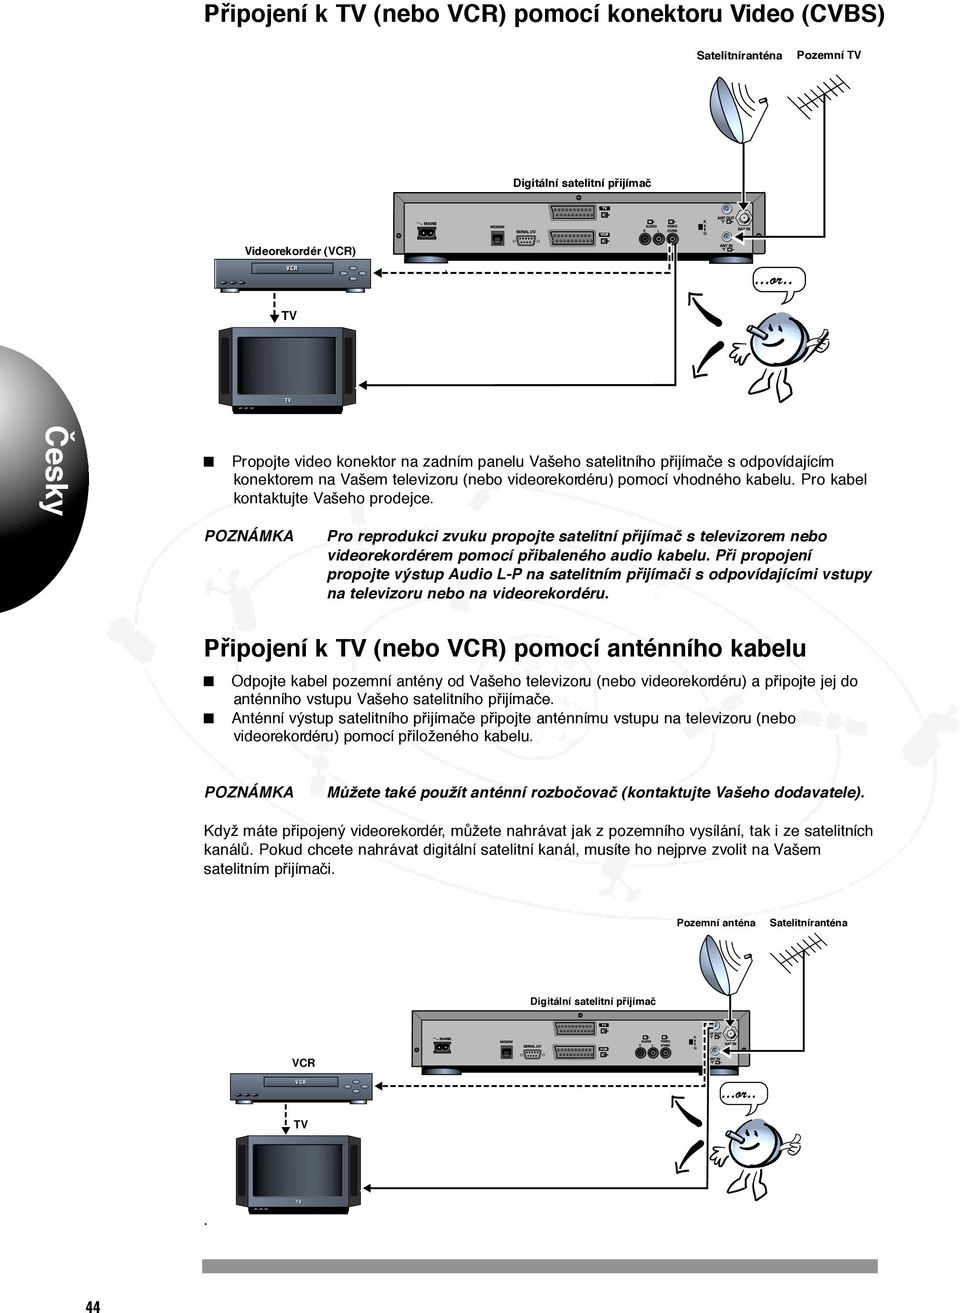 kordér (VCR) VCR...or.. 9 Propojte video konektor na zadním panelu Vašeho satelitního pfiijímaãe s odpovídajícím konektorem na Vašem televizoru (nebo videorekordéru) pomocí vhodného kabelu.